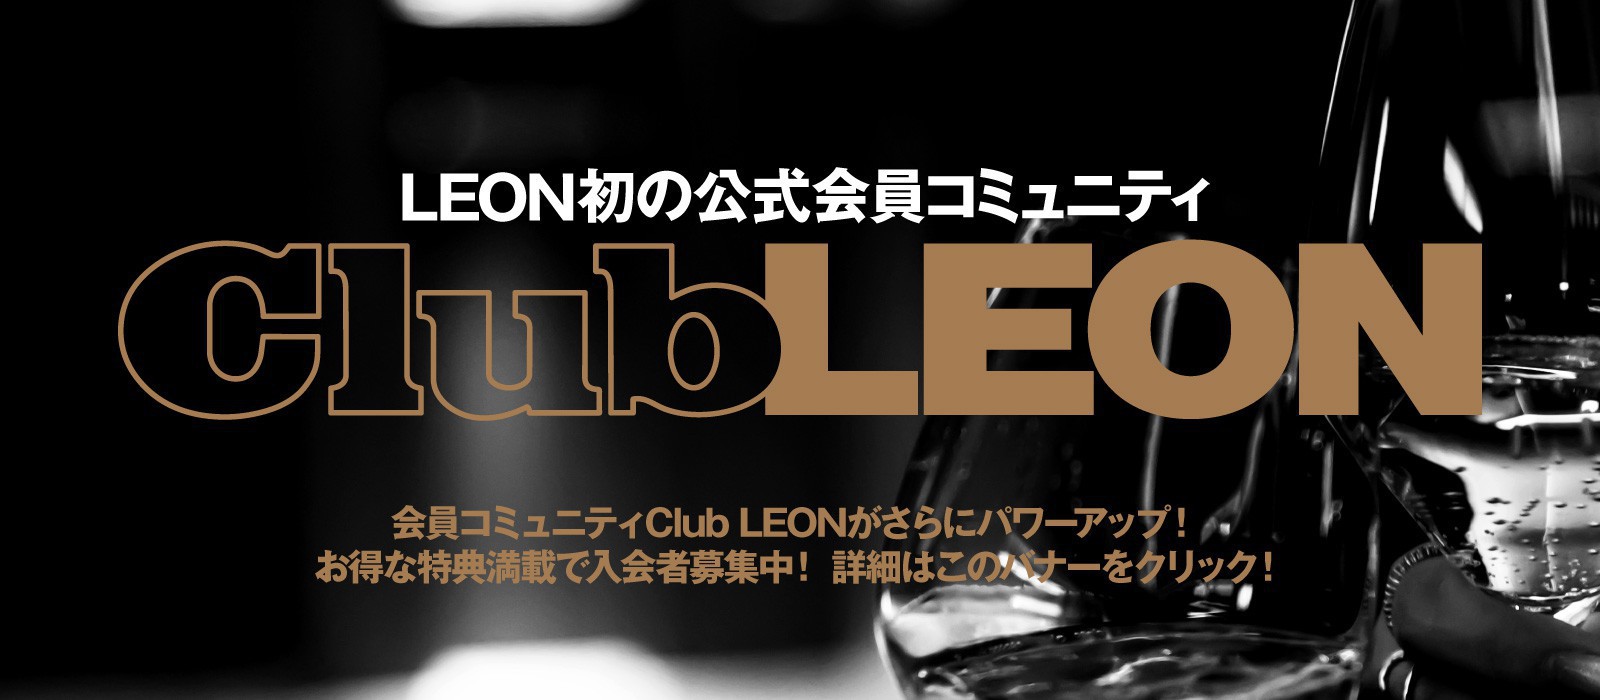 https://kaeruleon.jp/pages/clubleon?utm_source=leonjp&utm_medium=banner&utm_campaign=clubleon_leonjp